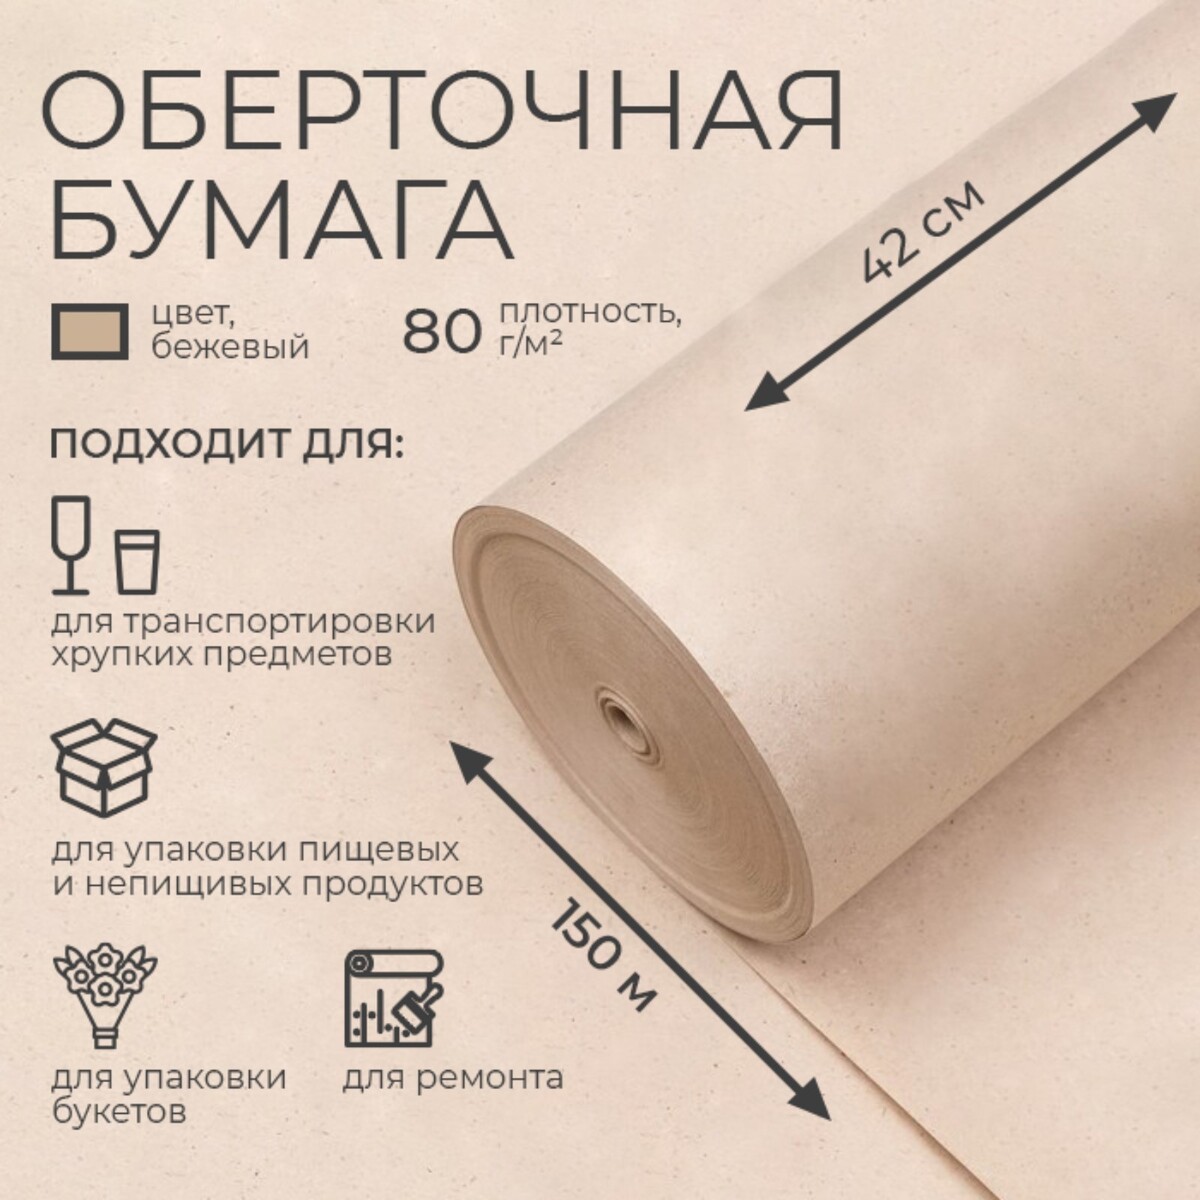 Бумага оберточная, марка органайзер для хранения швейных принадлежностей 15 × 15 × 15 см бежевый